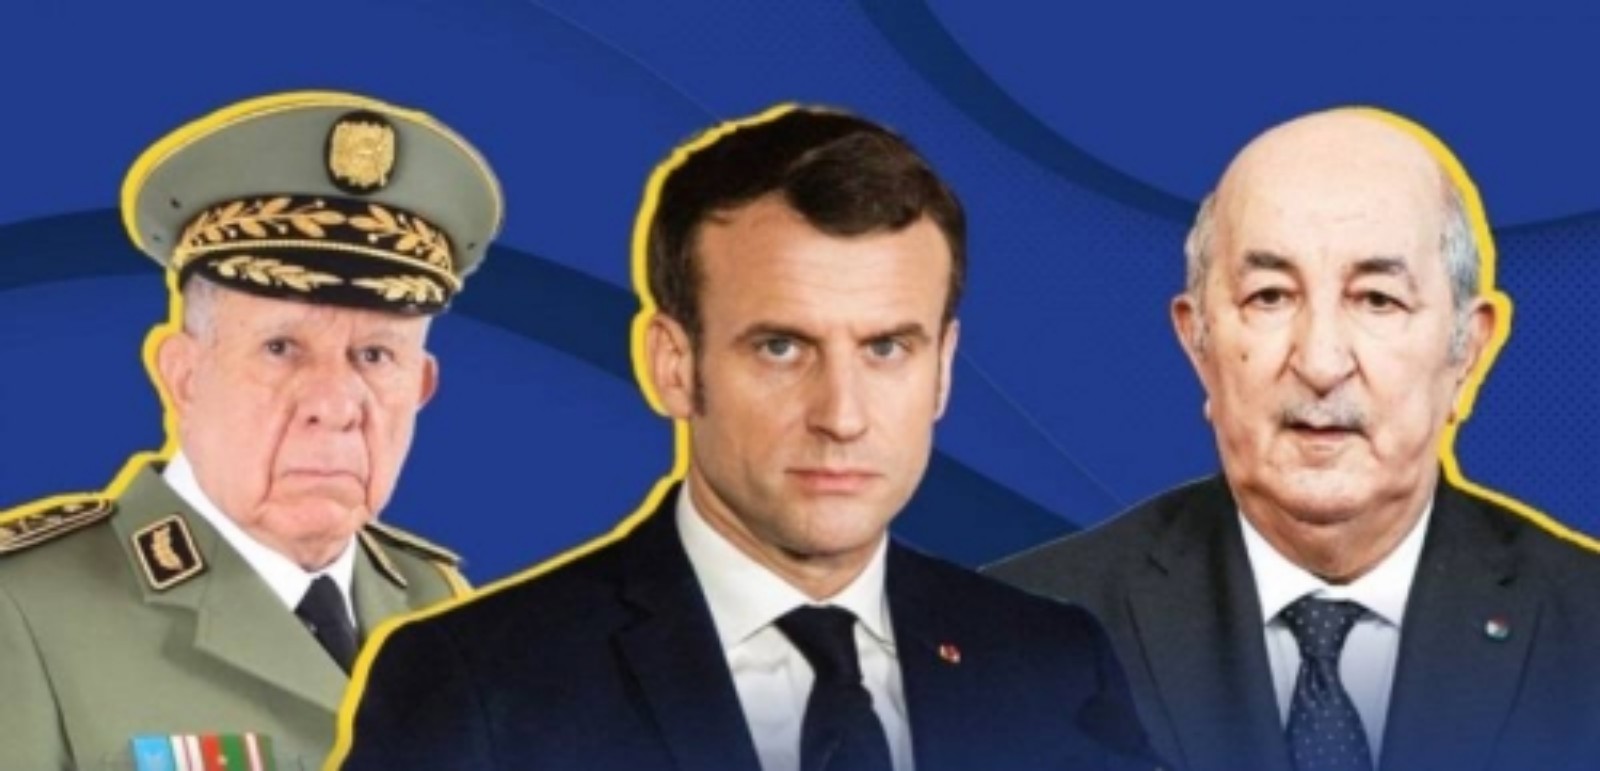 عشية زيارة تبون إلى فرنسا…ماكرون يهين الرئيس الجزائري و النظام العسكري